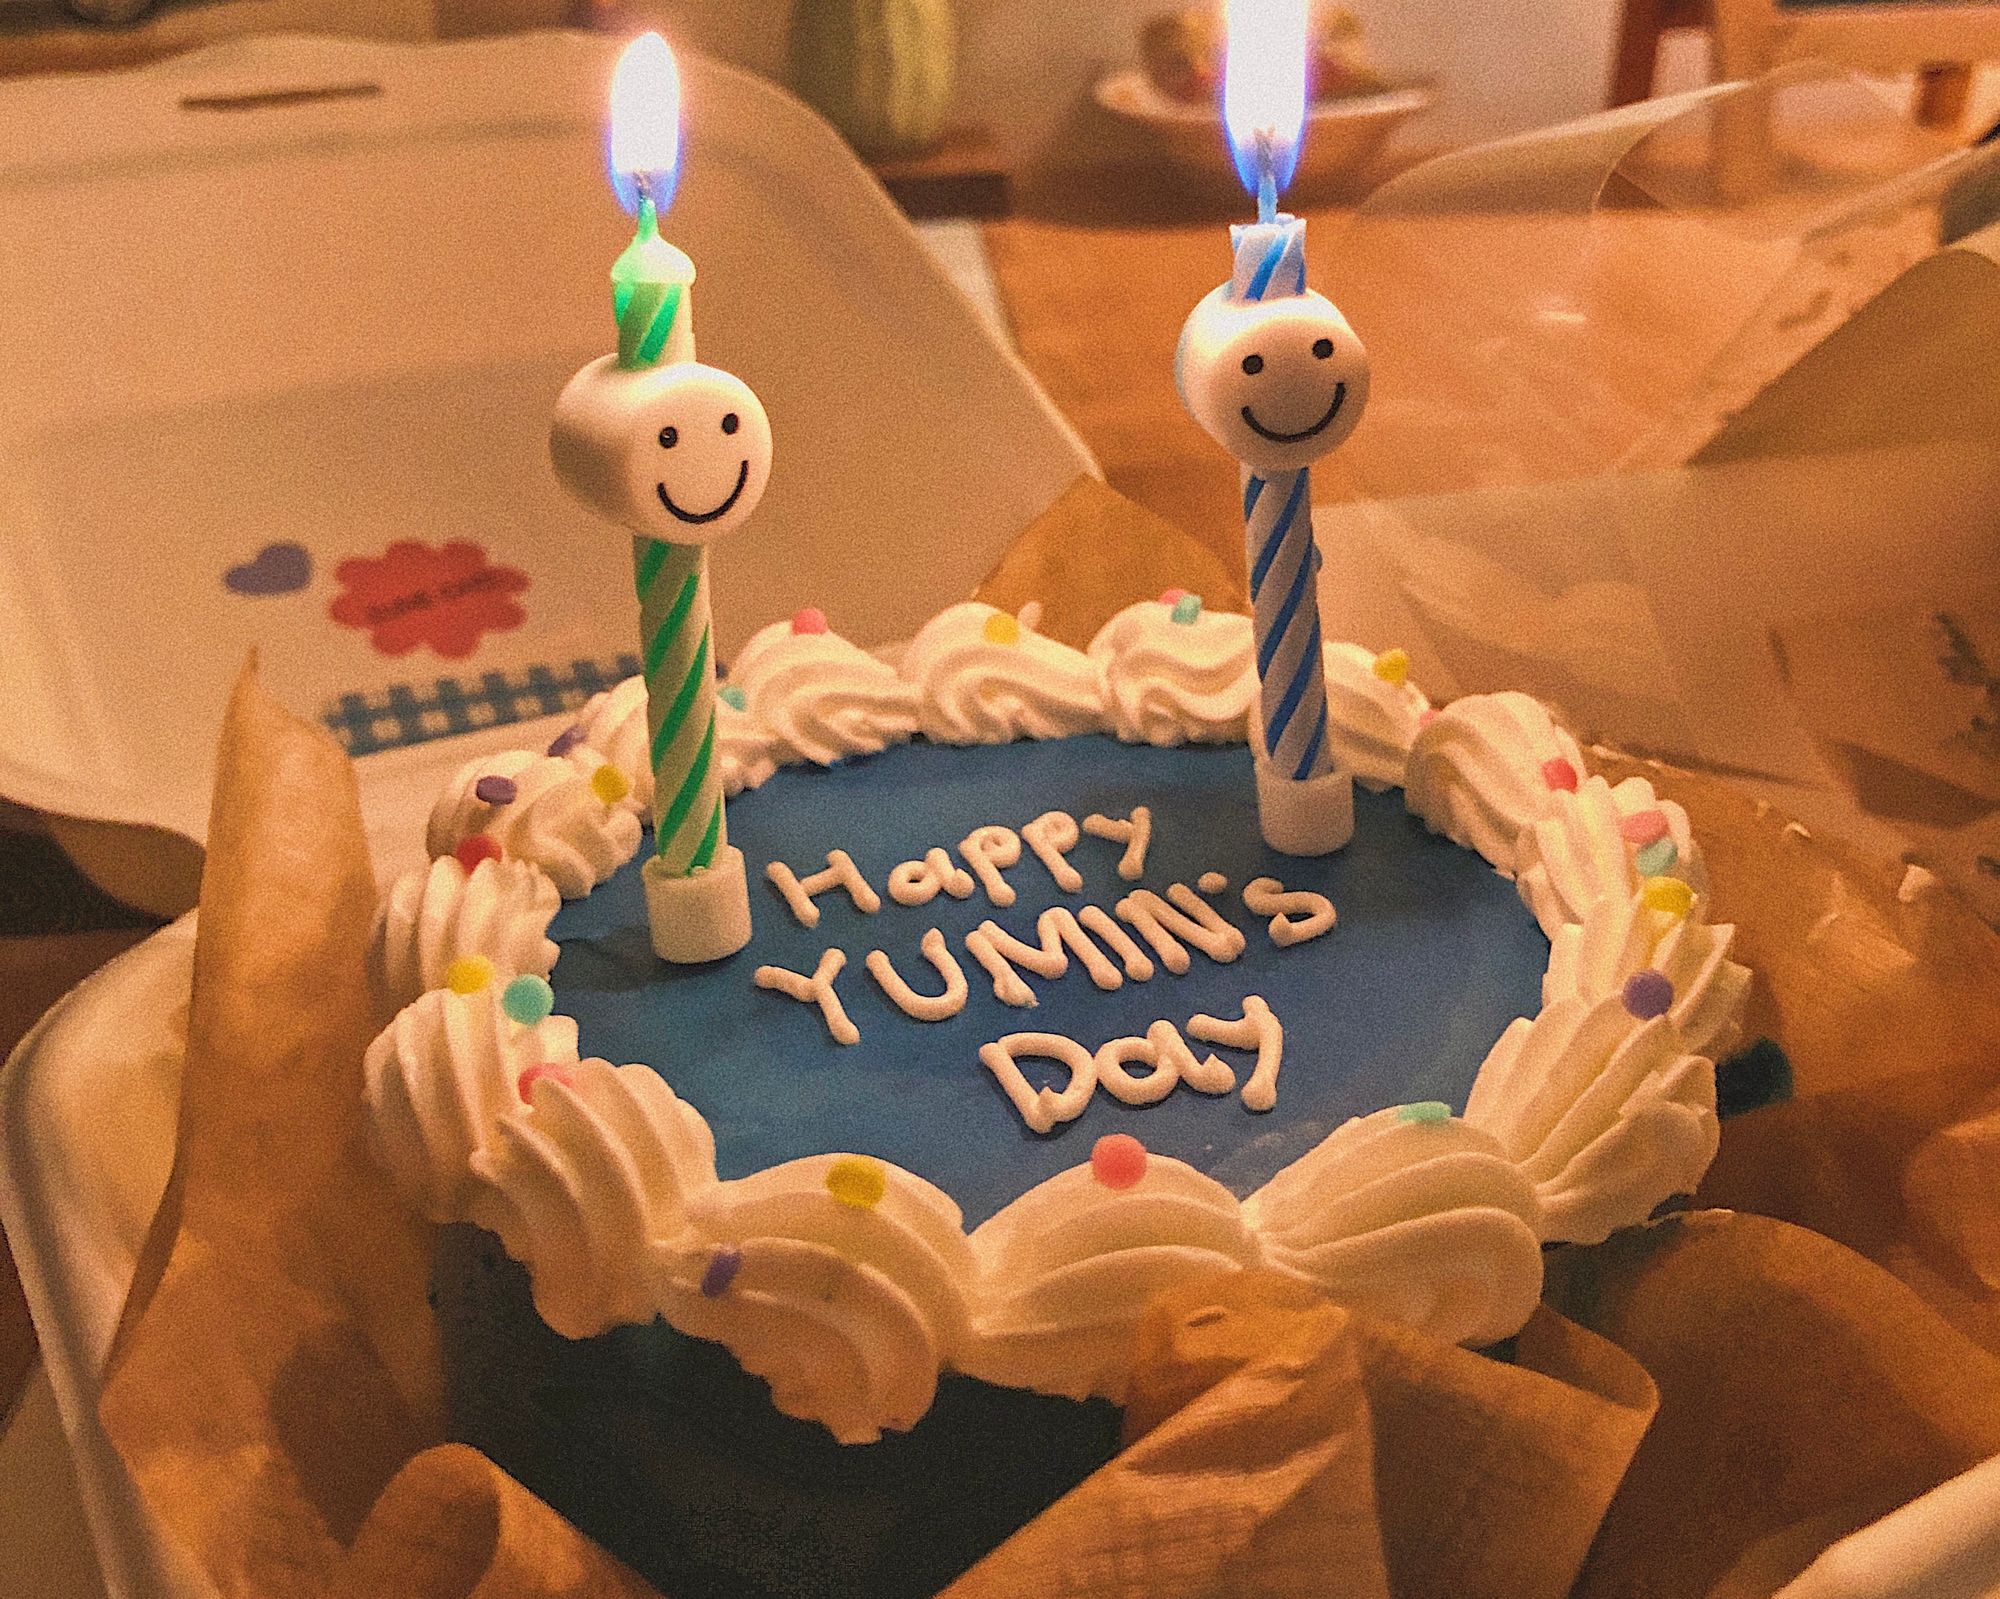 Yumin's Blog